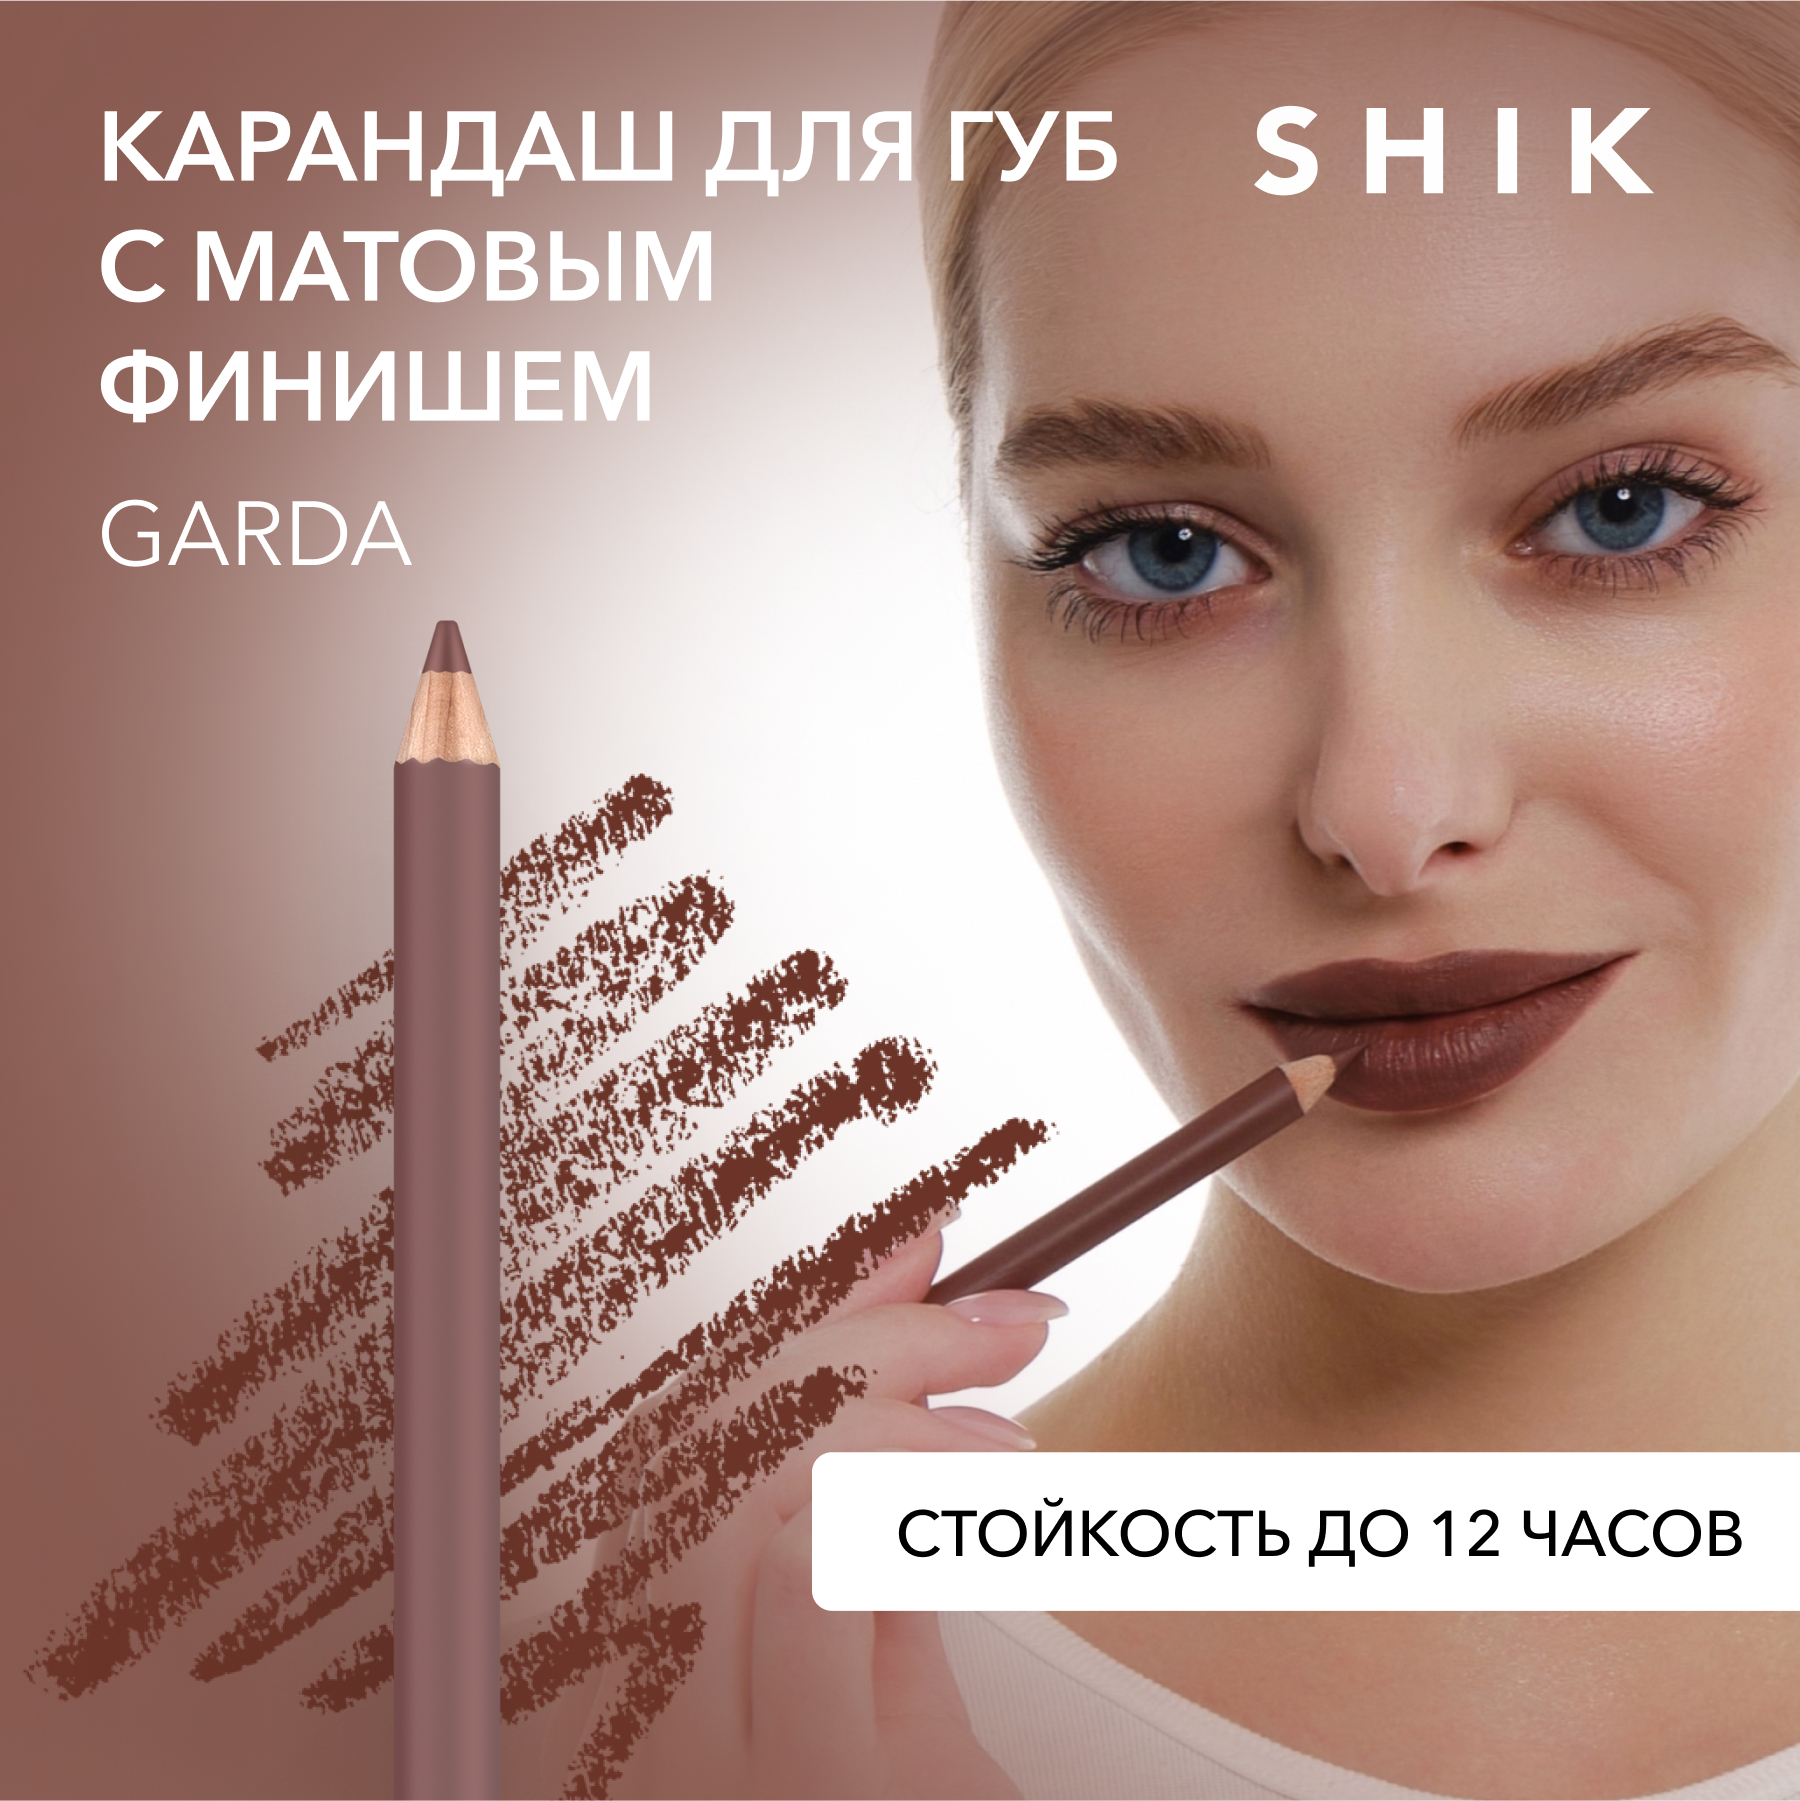 Карандаш для губ SHIK Lip Pencil тон Garda 1,14 г shik карандаш для губ lip pencil venice 12 гр